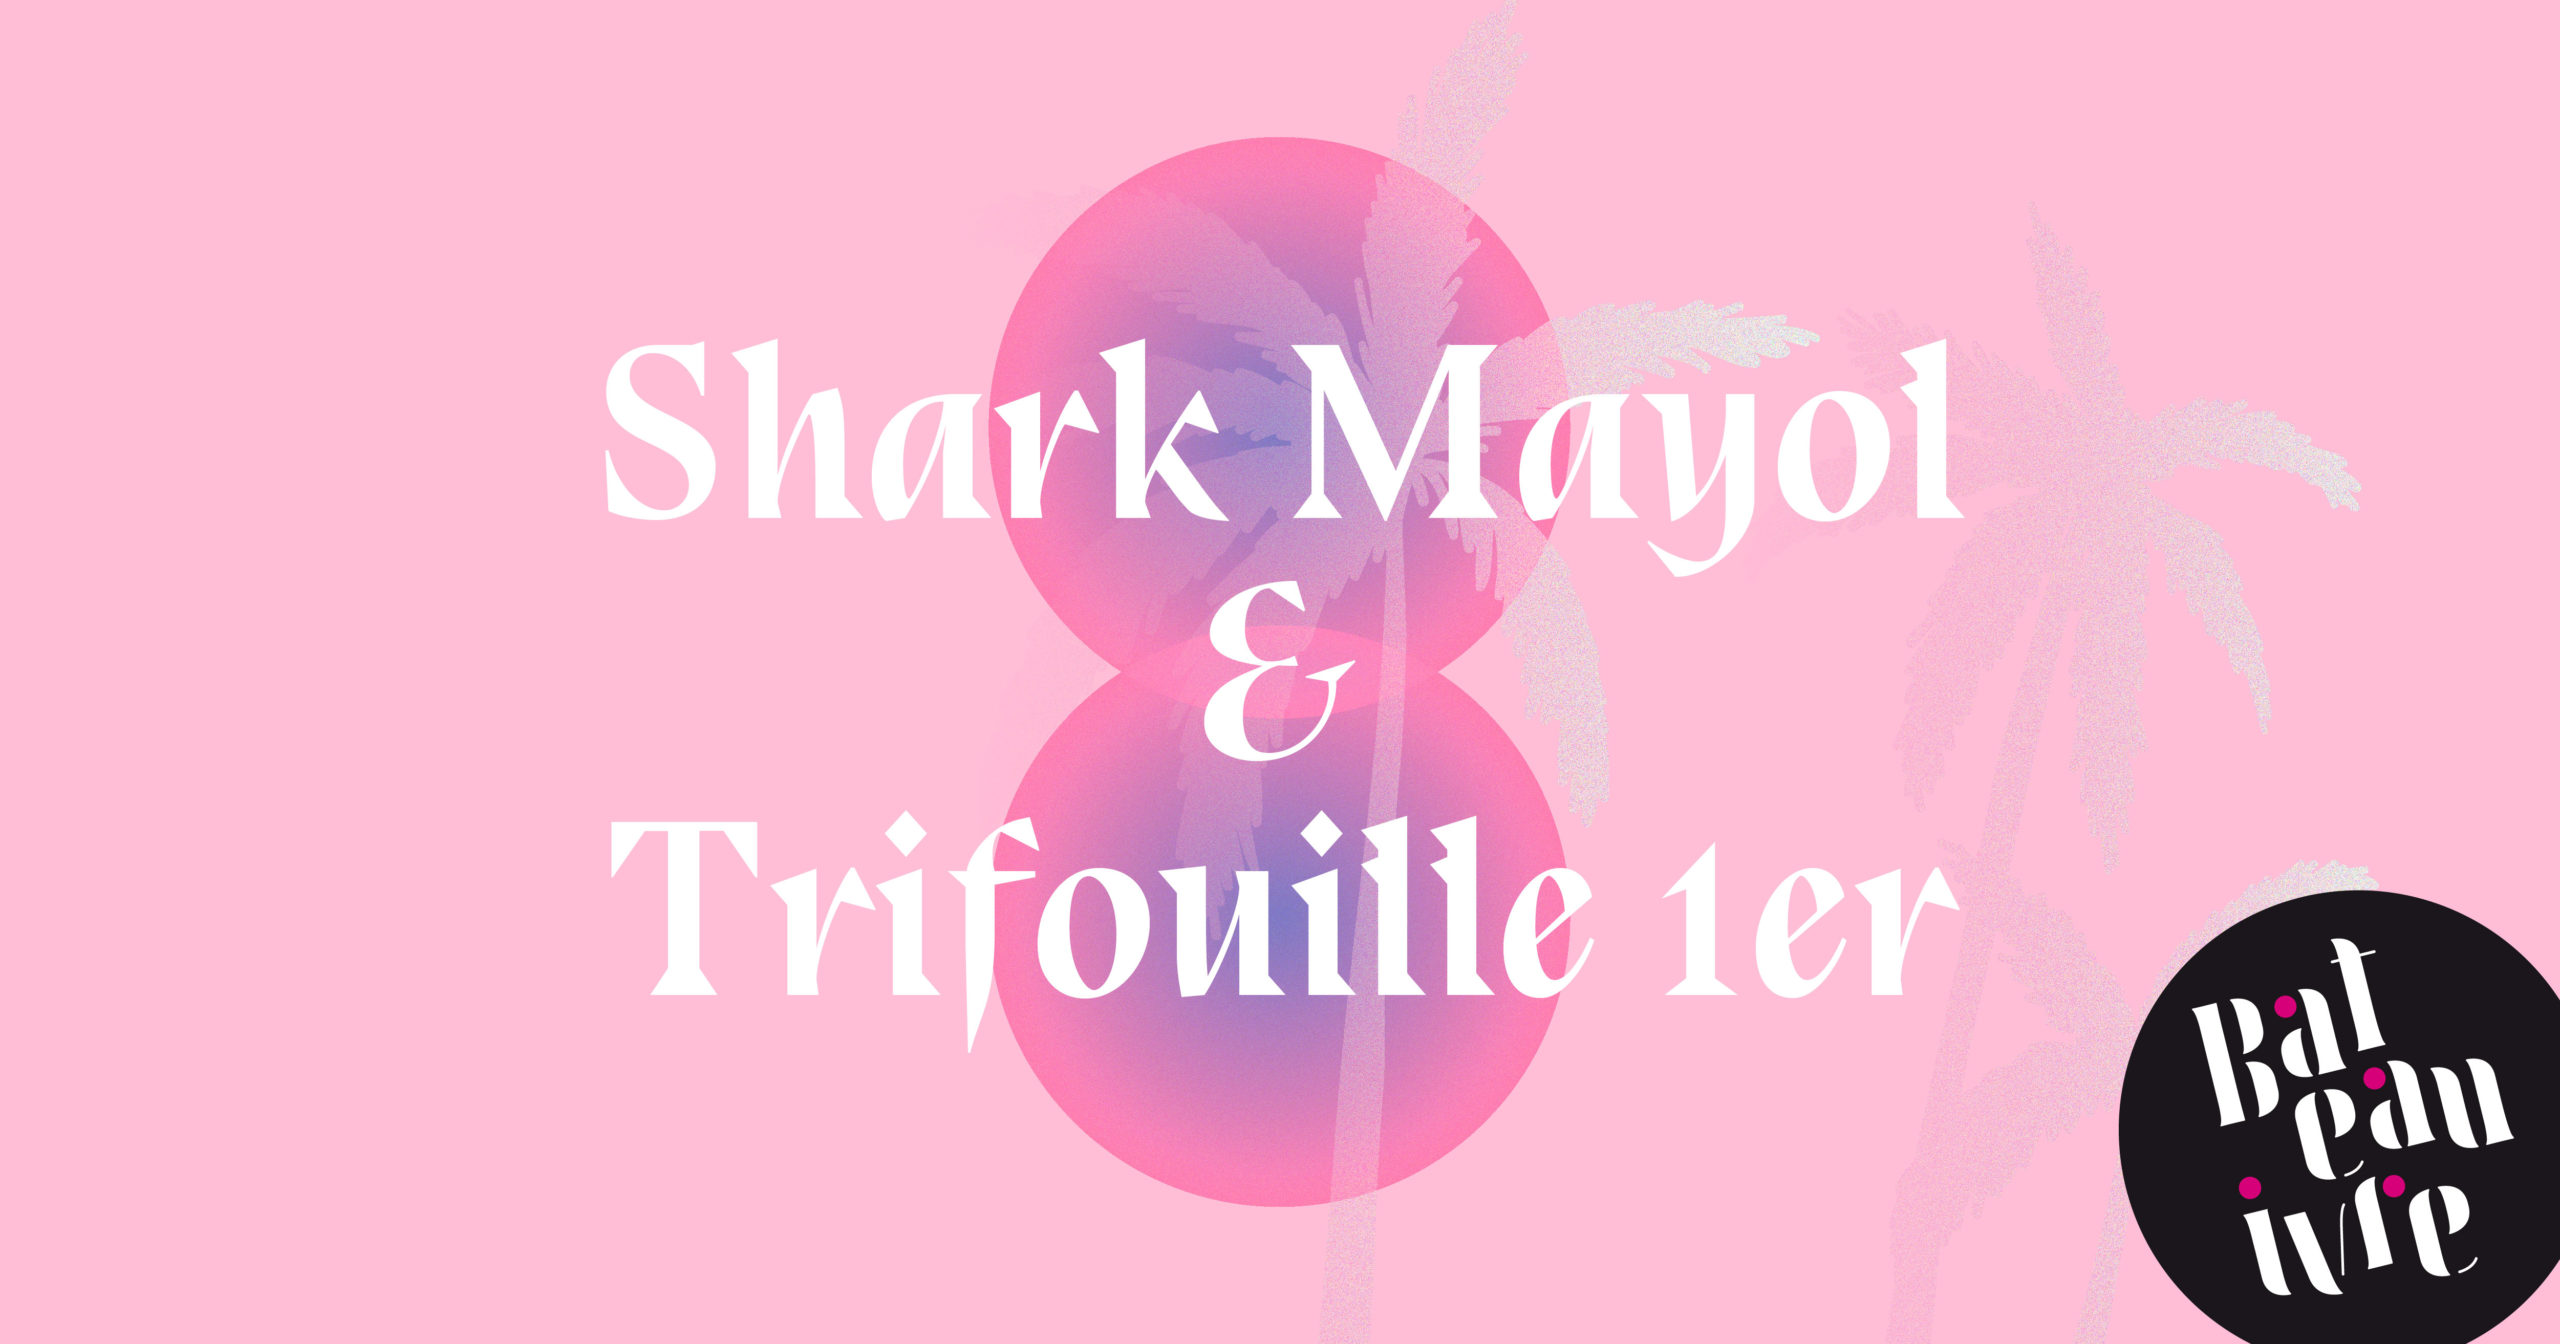 Shark mayol et Trifouille 1er